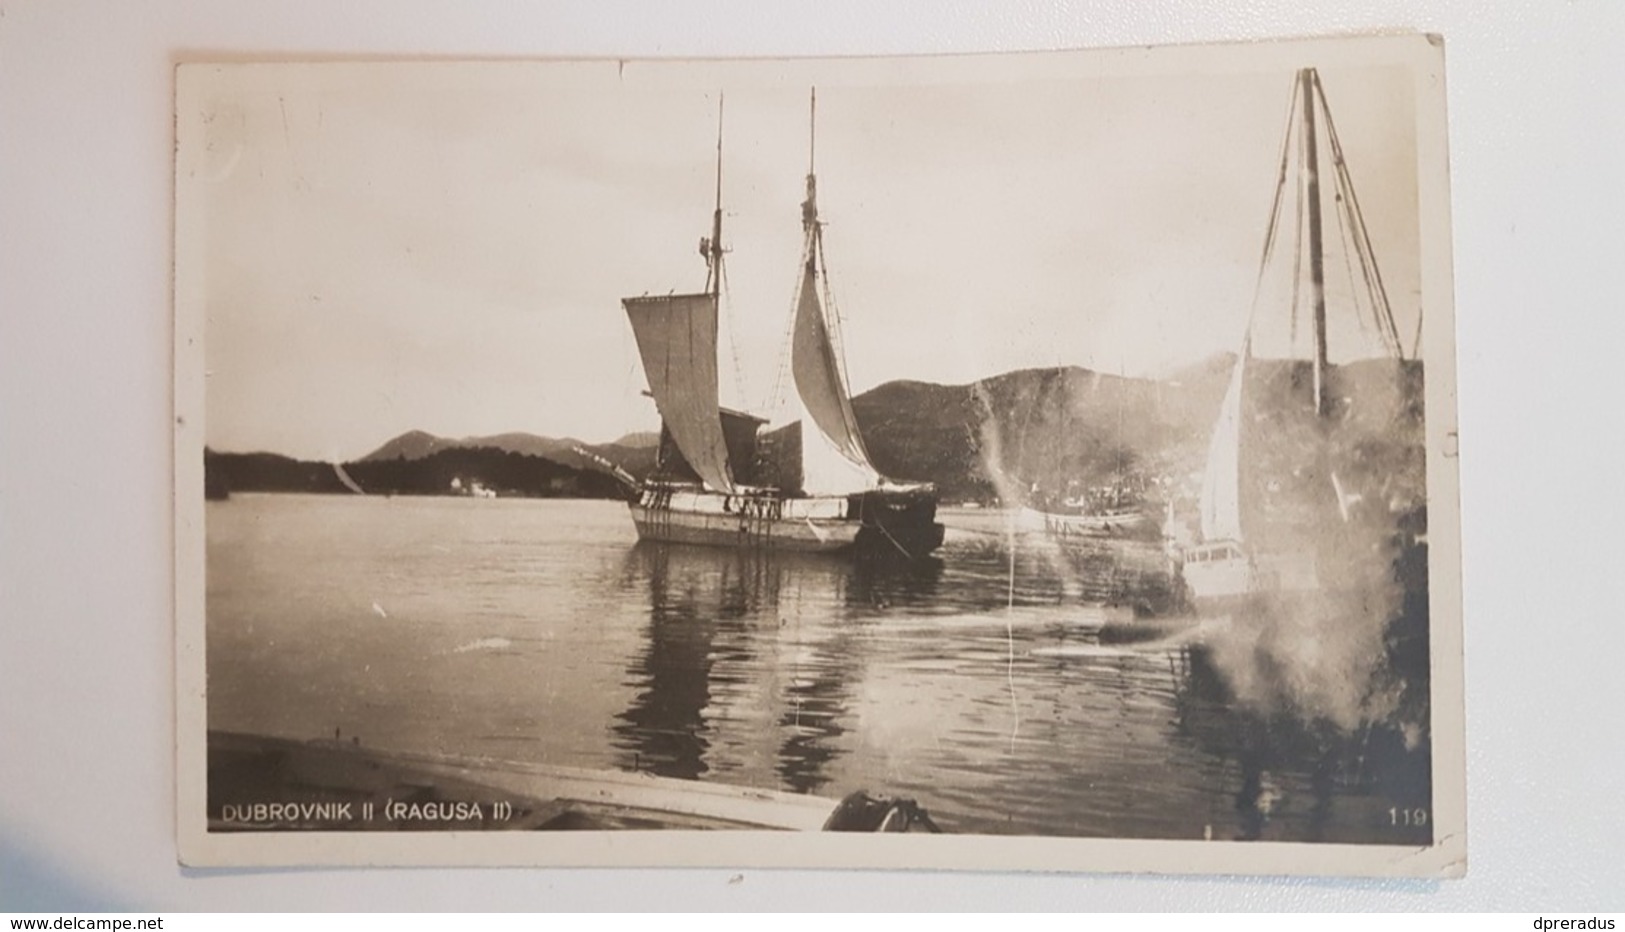 Croatia Dubrovnik Ragusa Lapad Harbour Hafen Ship Cca. 1930. - Kroatien